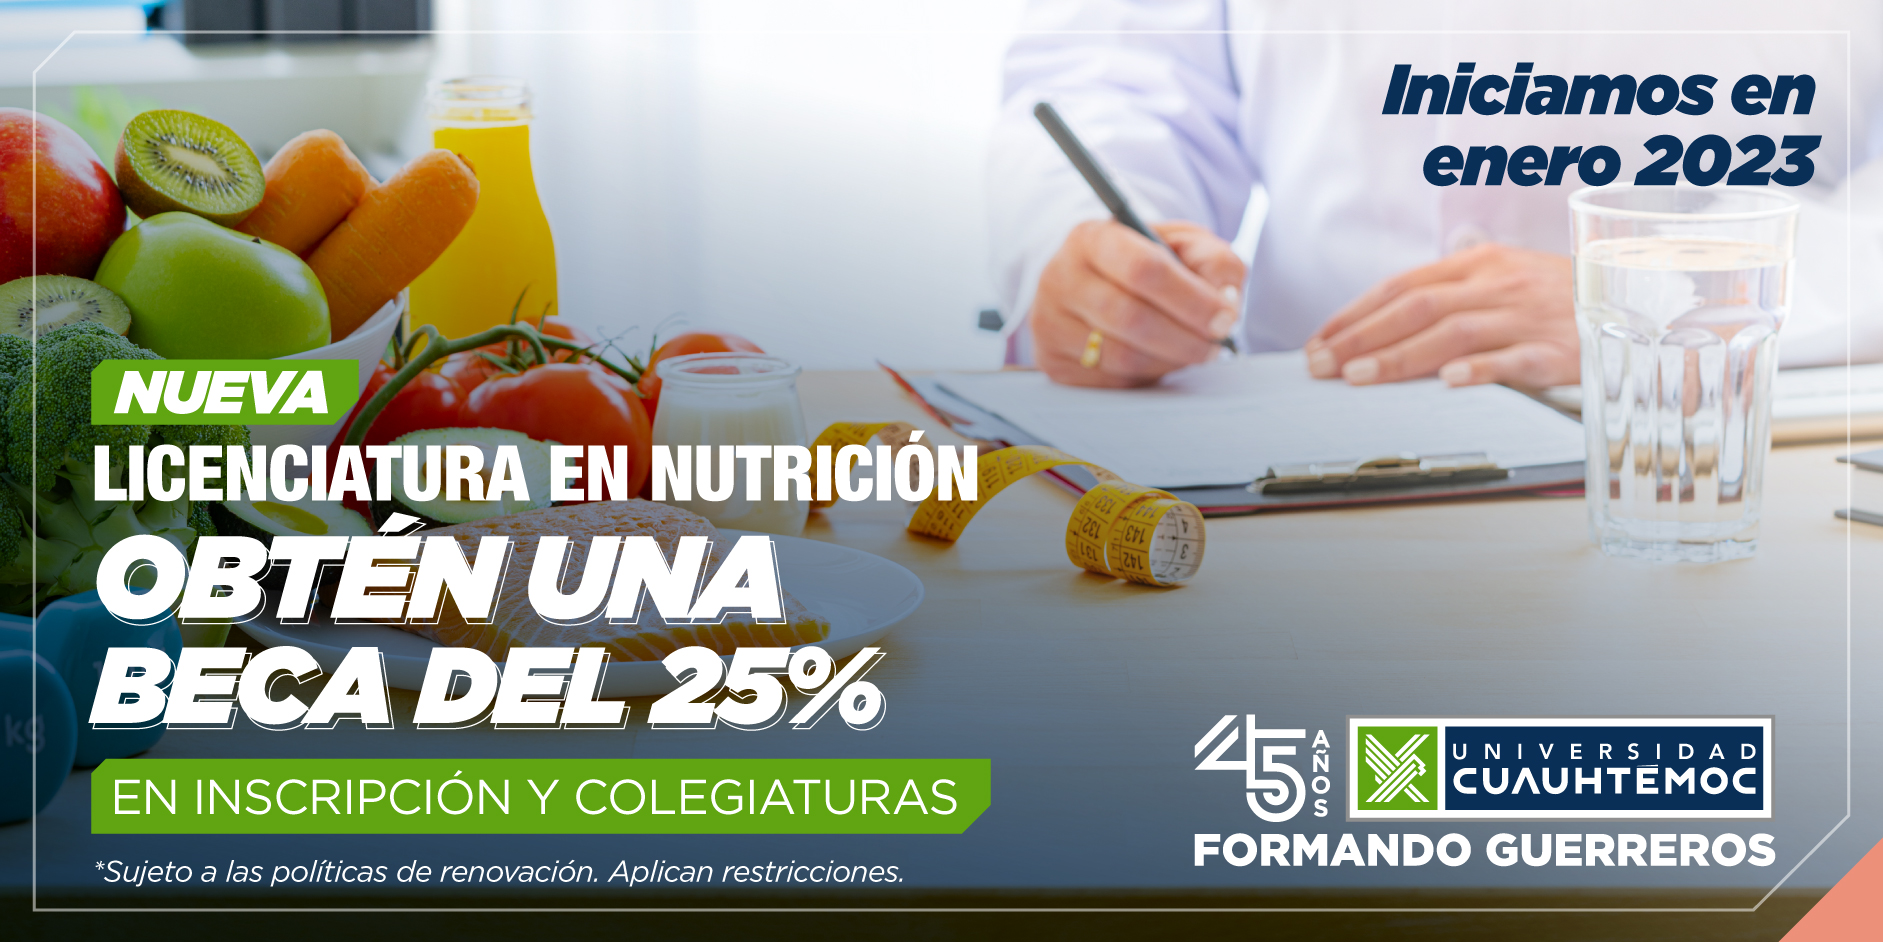 El objetivo de la Licenciatura en Nutrición de la Universidad Cuauhtémoc te animará a querer ser parte de este programa.